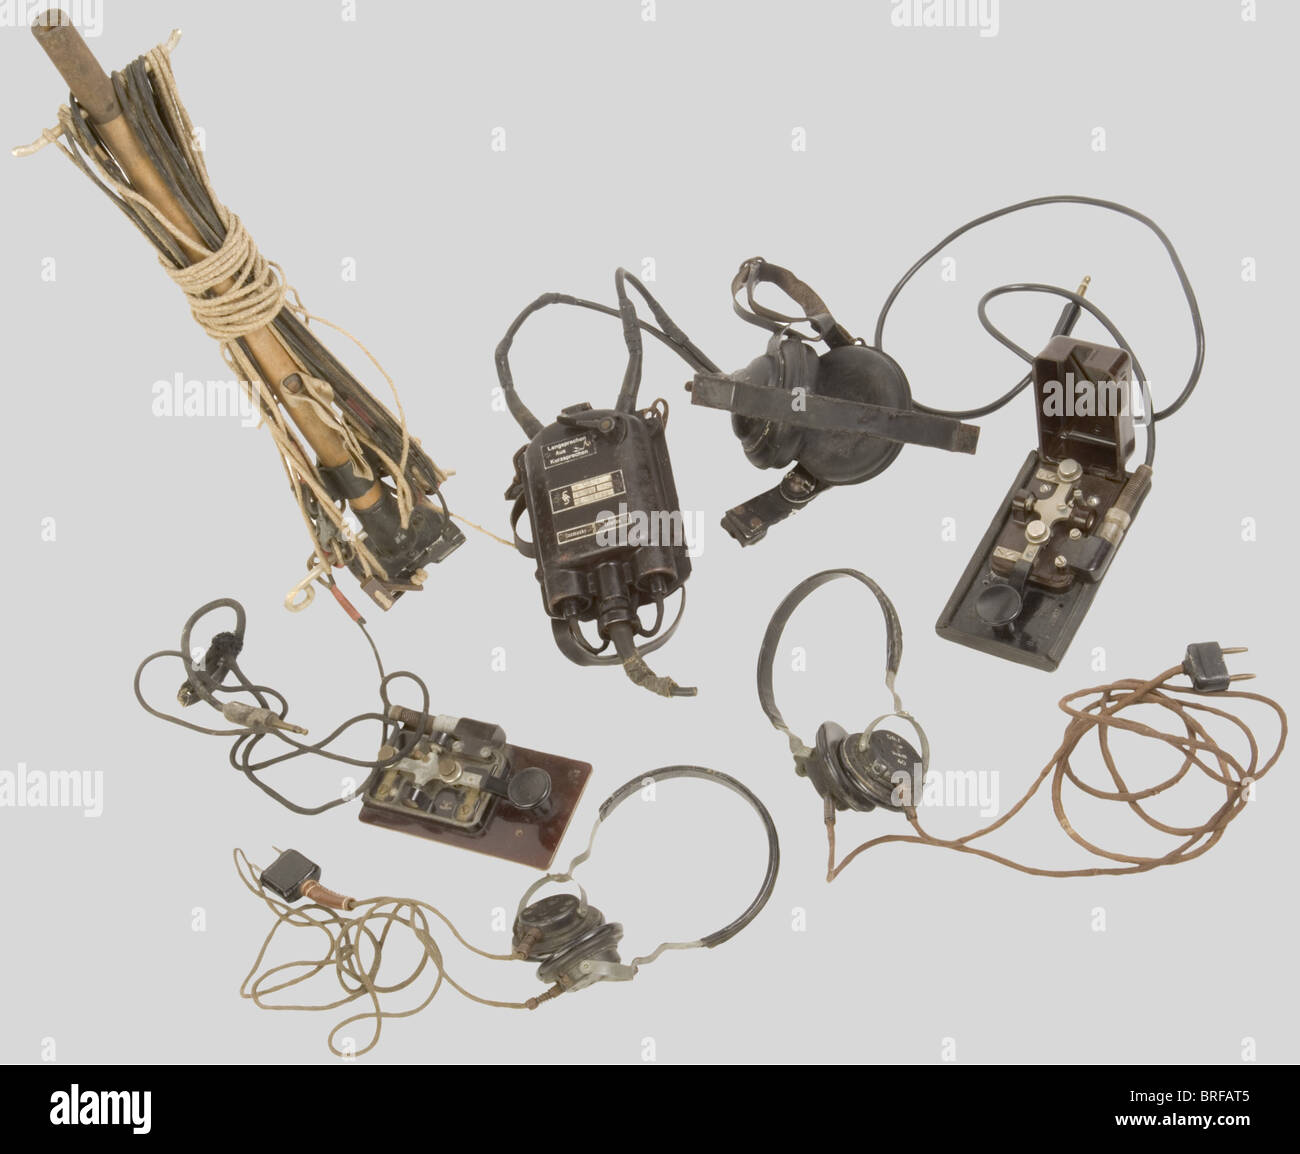 Un gruppo di apparecchiature radio Wehrmacht, compreso un palo radio di trasmissione/ricezione con antenna, in legno e alluminio grigio, completo di cavi e bollini di consegna. Due encoder morse in metallo con base in bachelite, uno senza coperchio, completo di cavi e spine/prese. Due set di cuffie complete di prese e cavi. Trasmettitore/ricevitore Siemens per artiglieria costiera, inclusi auricolari neri larghi, cinghie di ritegno in pelle, fibbie metalliche, microfono mancante, custodia ventrale in metallo nero con cinghia di fissaggio, completo di bottoni e prese, Foto Stock